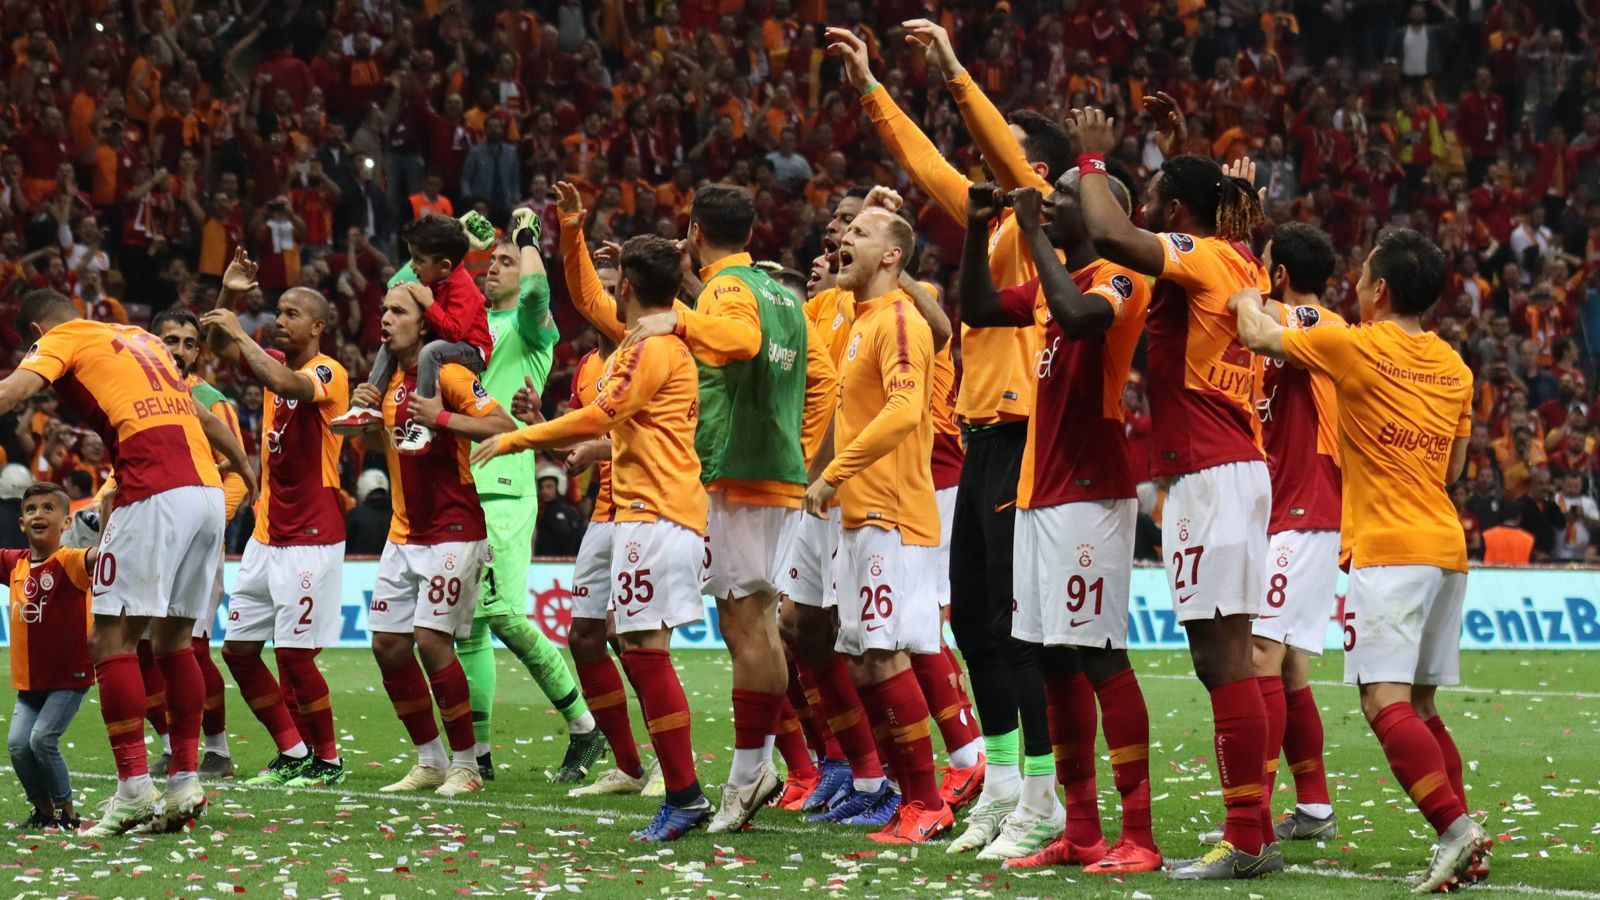 
                <strong>Türkei: Galatasary Istanbul</strong><br>
                Galatasaray Istanbul ist zum 18. Mal türkischer Pokalsieger! Das Team von Trainer Fatih Terim setzte sich im Finale gegen Akhisarspor mit 3:1 durch. In der vergangenen Saison war Galatasaray noch im Halbfinale des türkischen Pokals am späteren Sieger Akhisarspor gescheitert.
              